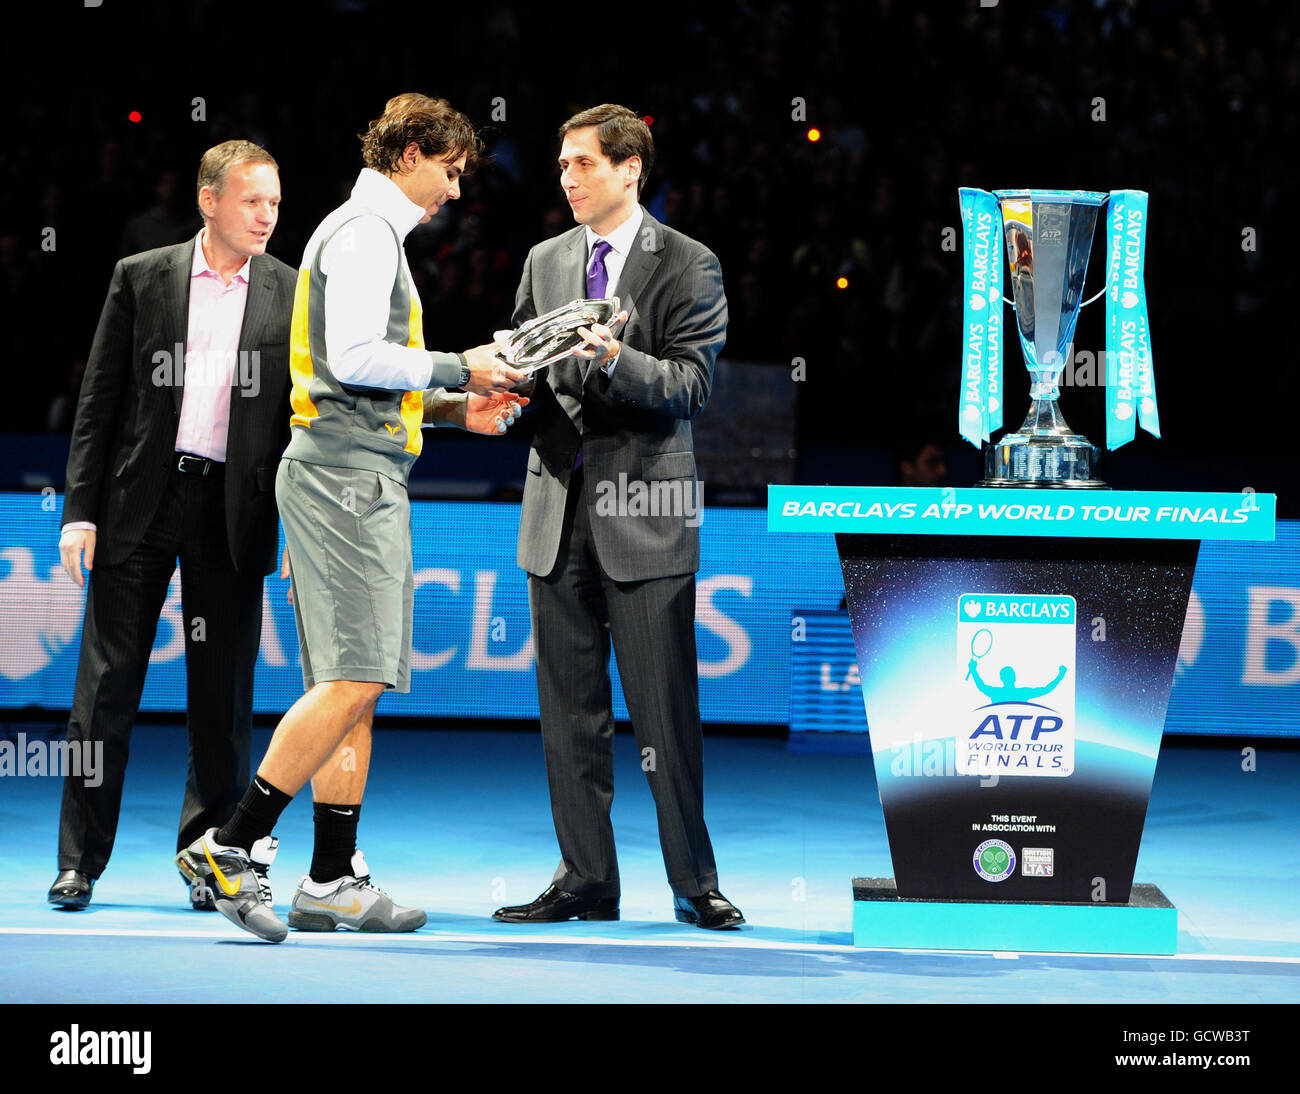 Il spagnolo Rafael Nadal raccoglie i suoi secondi classificati nel corso dell'ottavo giorno delle finali del Barclays ATP World Tennis Tour all'O2 Arena di Londra. Foto Stock